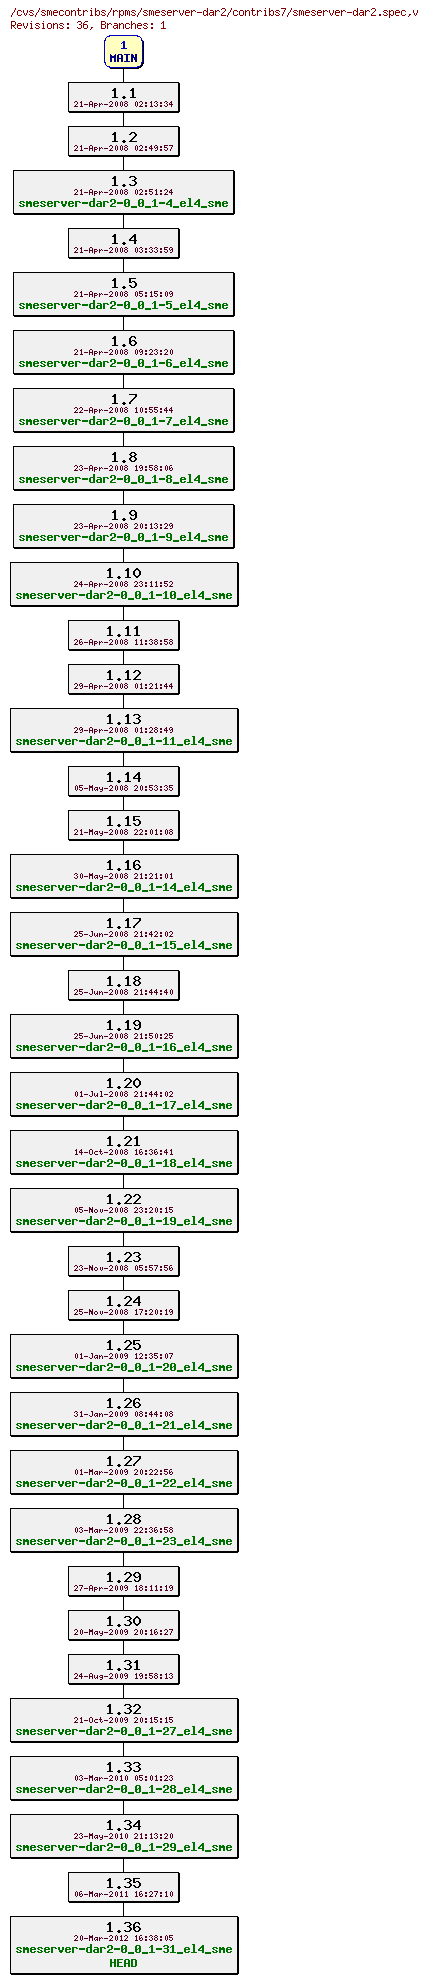 Revisions of rpms/smeserver-dar2/contribs7/smeserver-dar2.spec